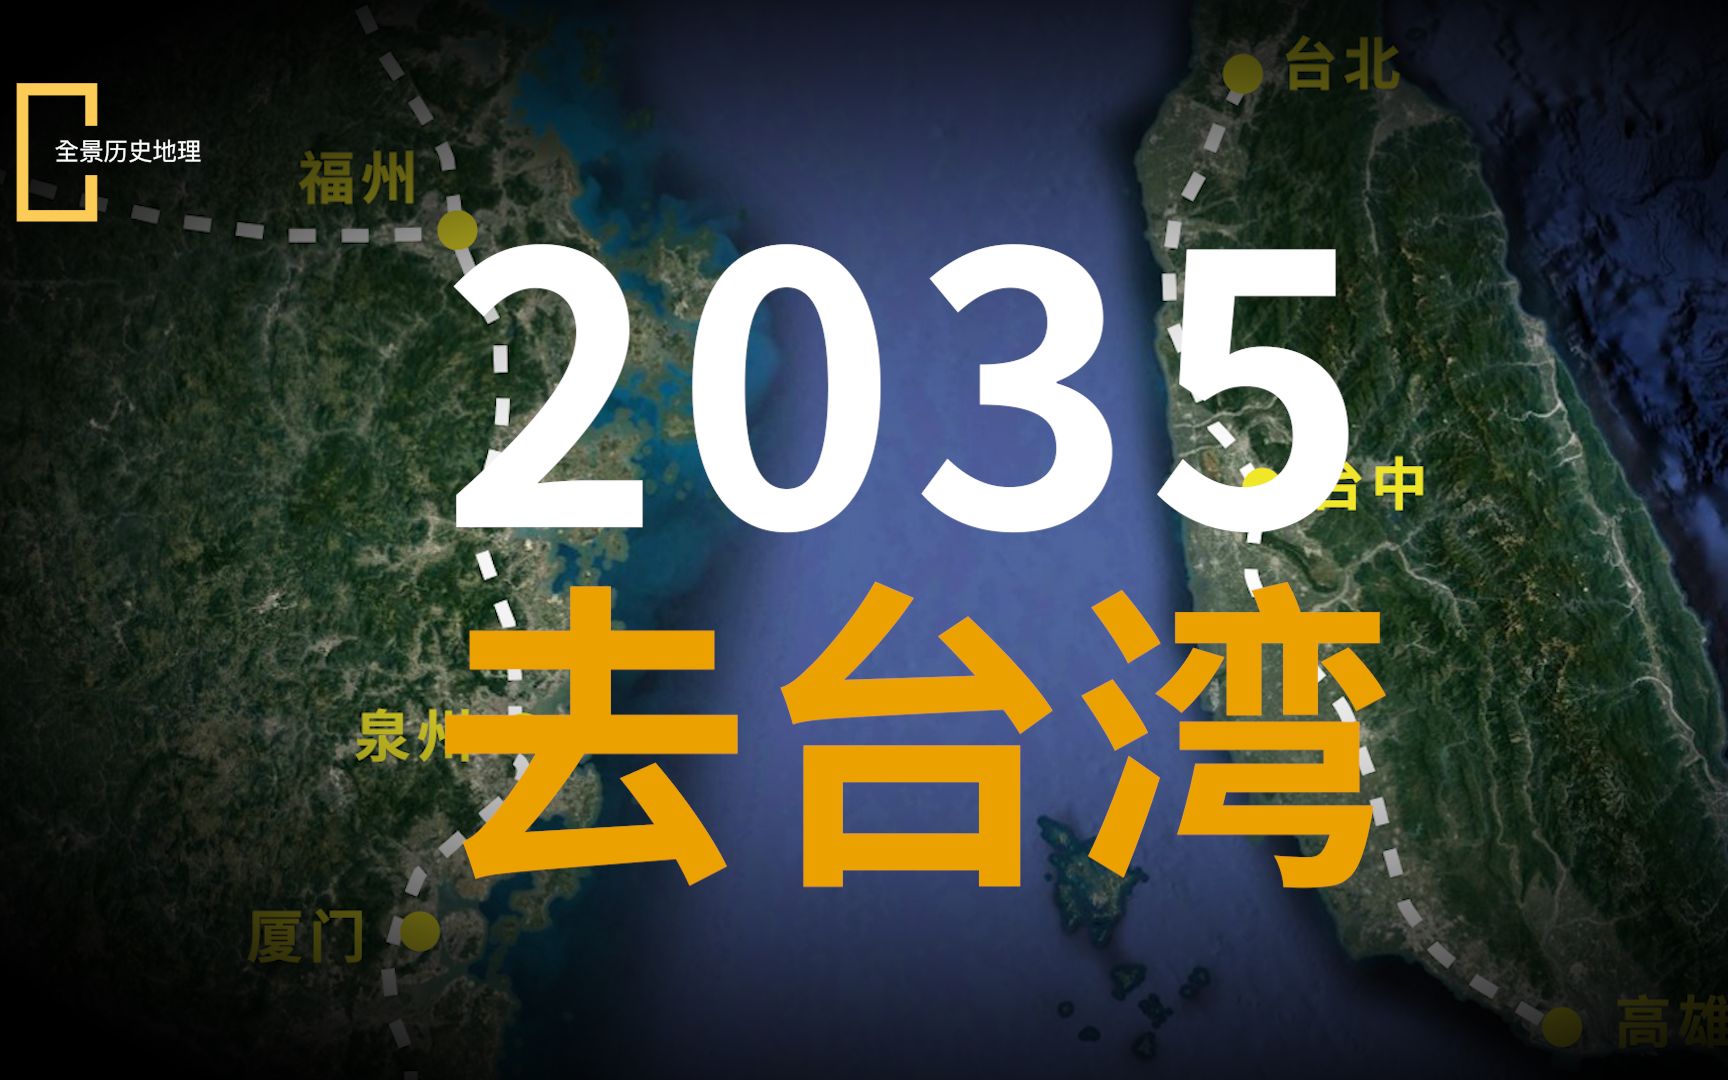 2035坐上高铁去台湾,这靠谱吗?